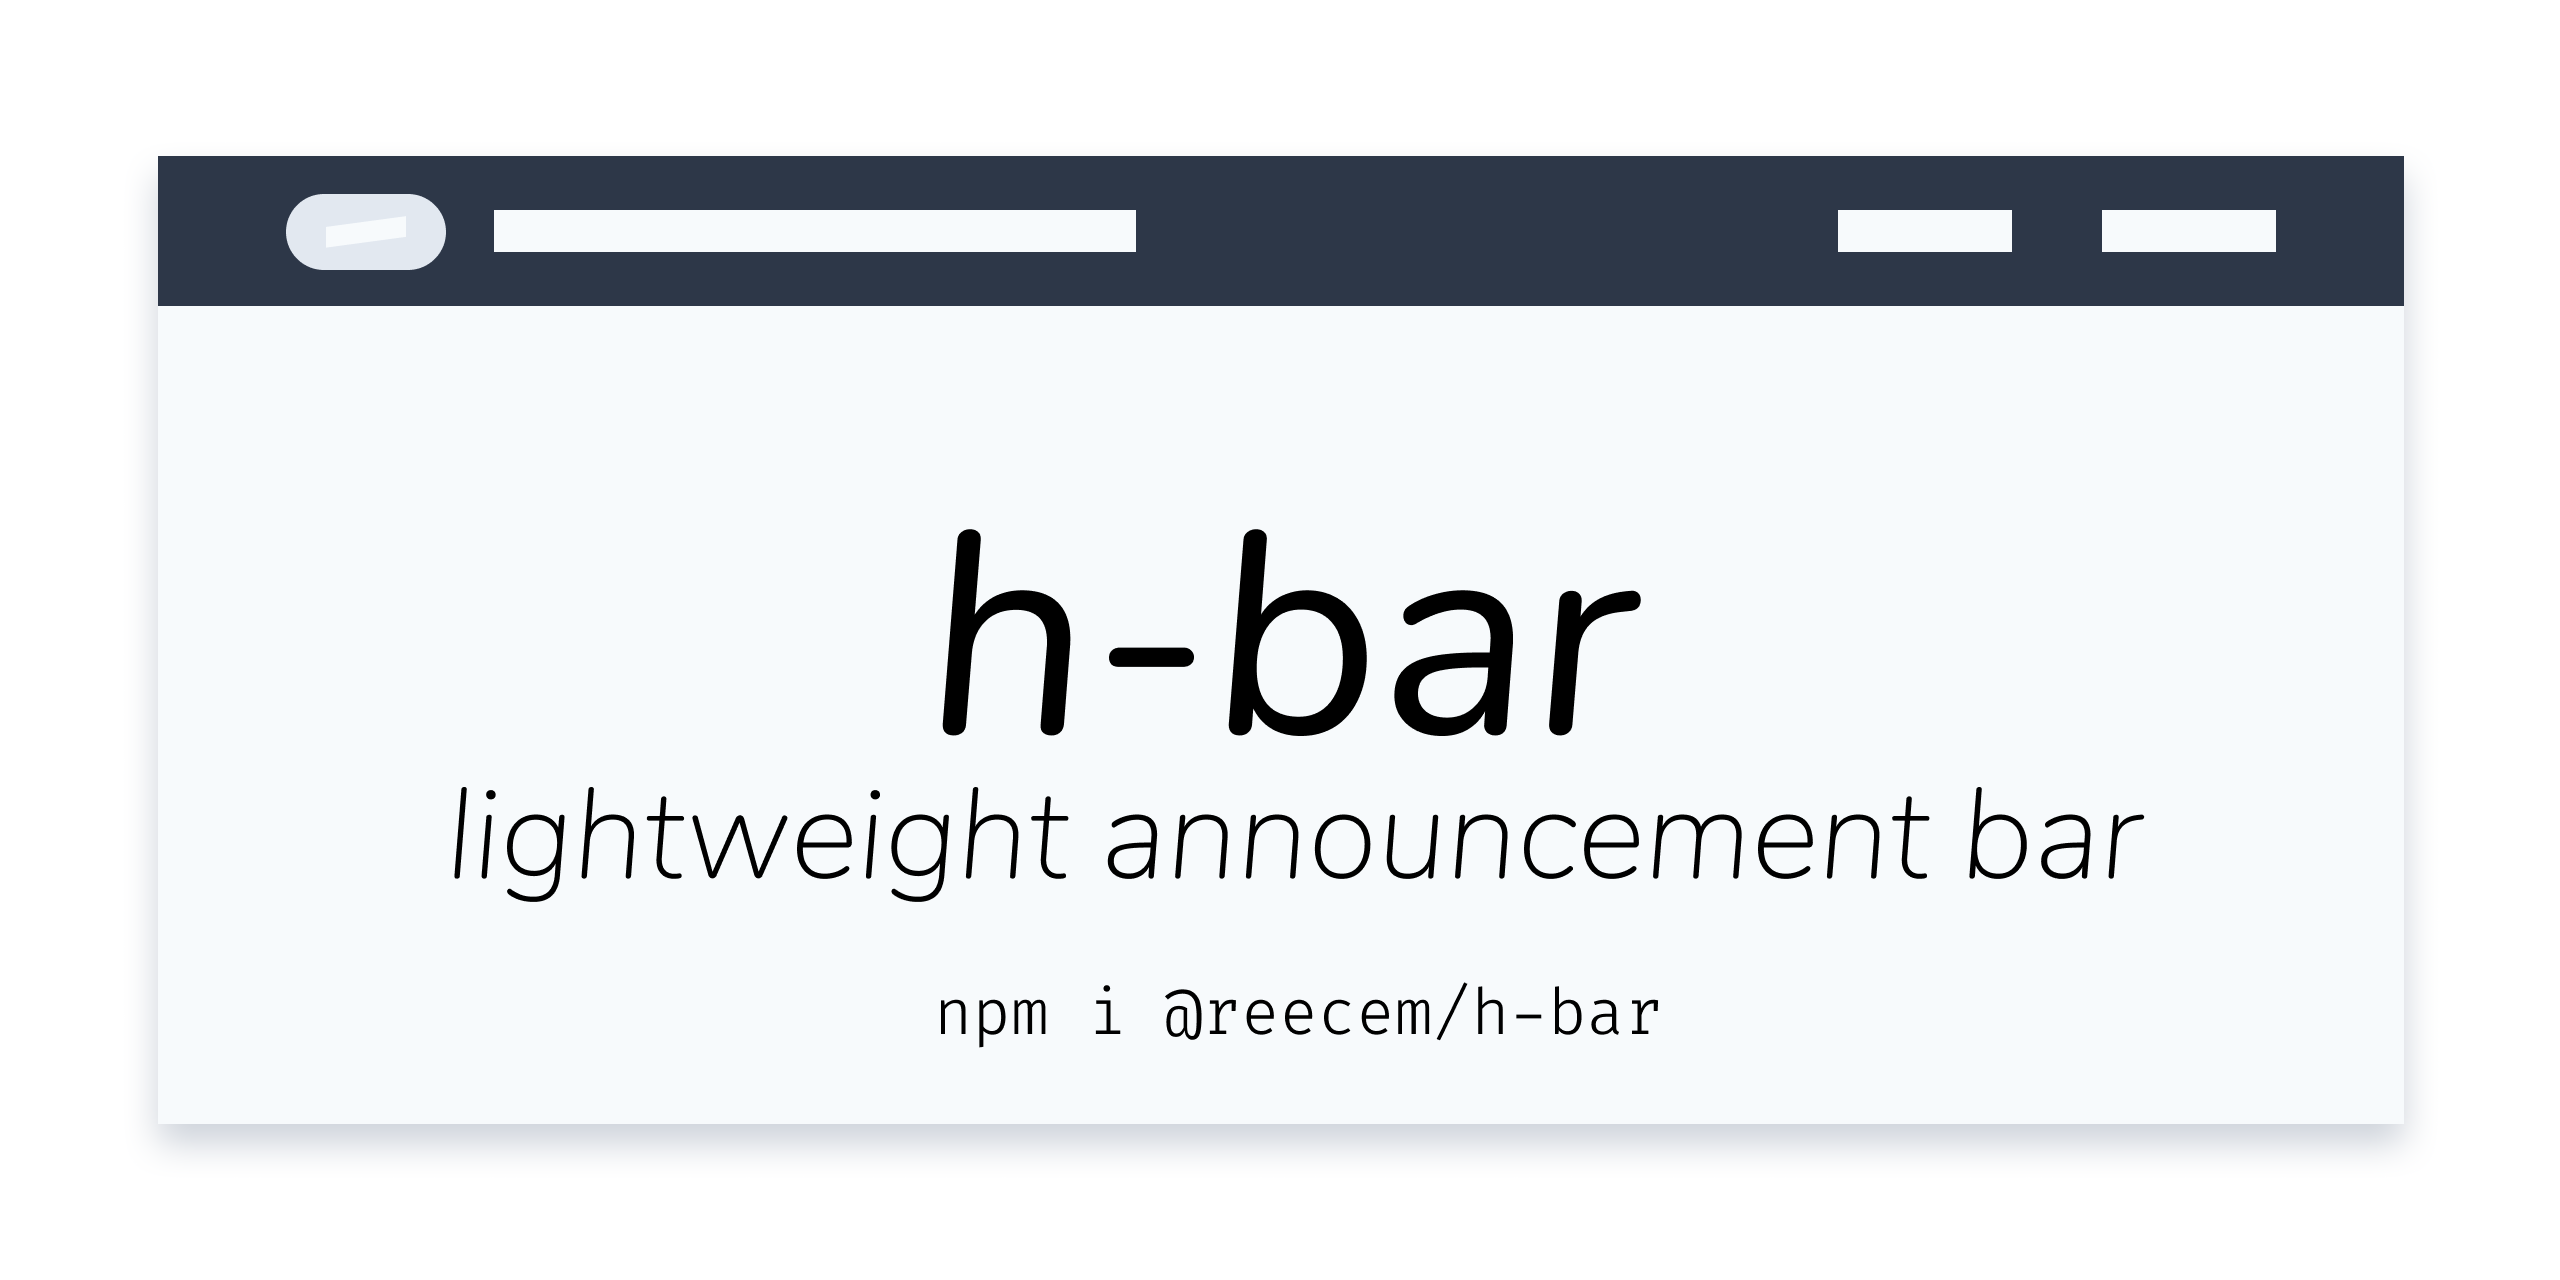 h-bar announcements